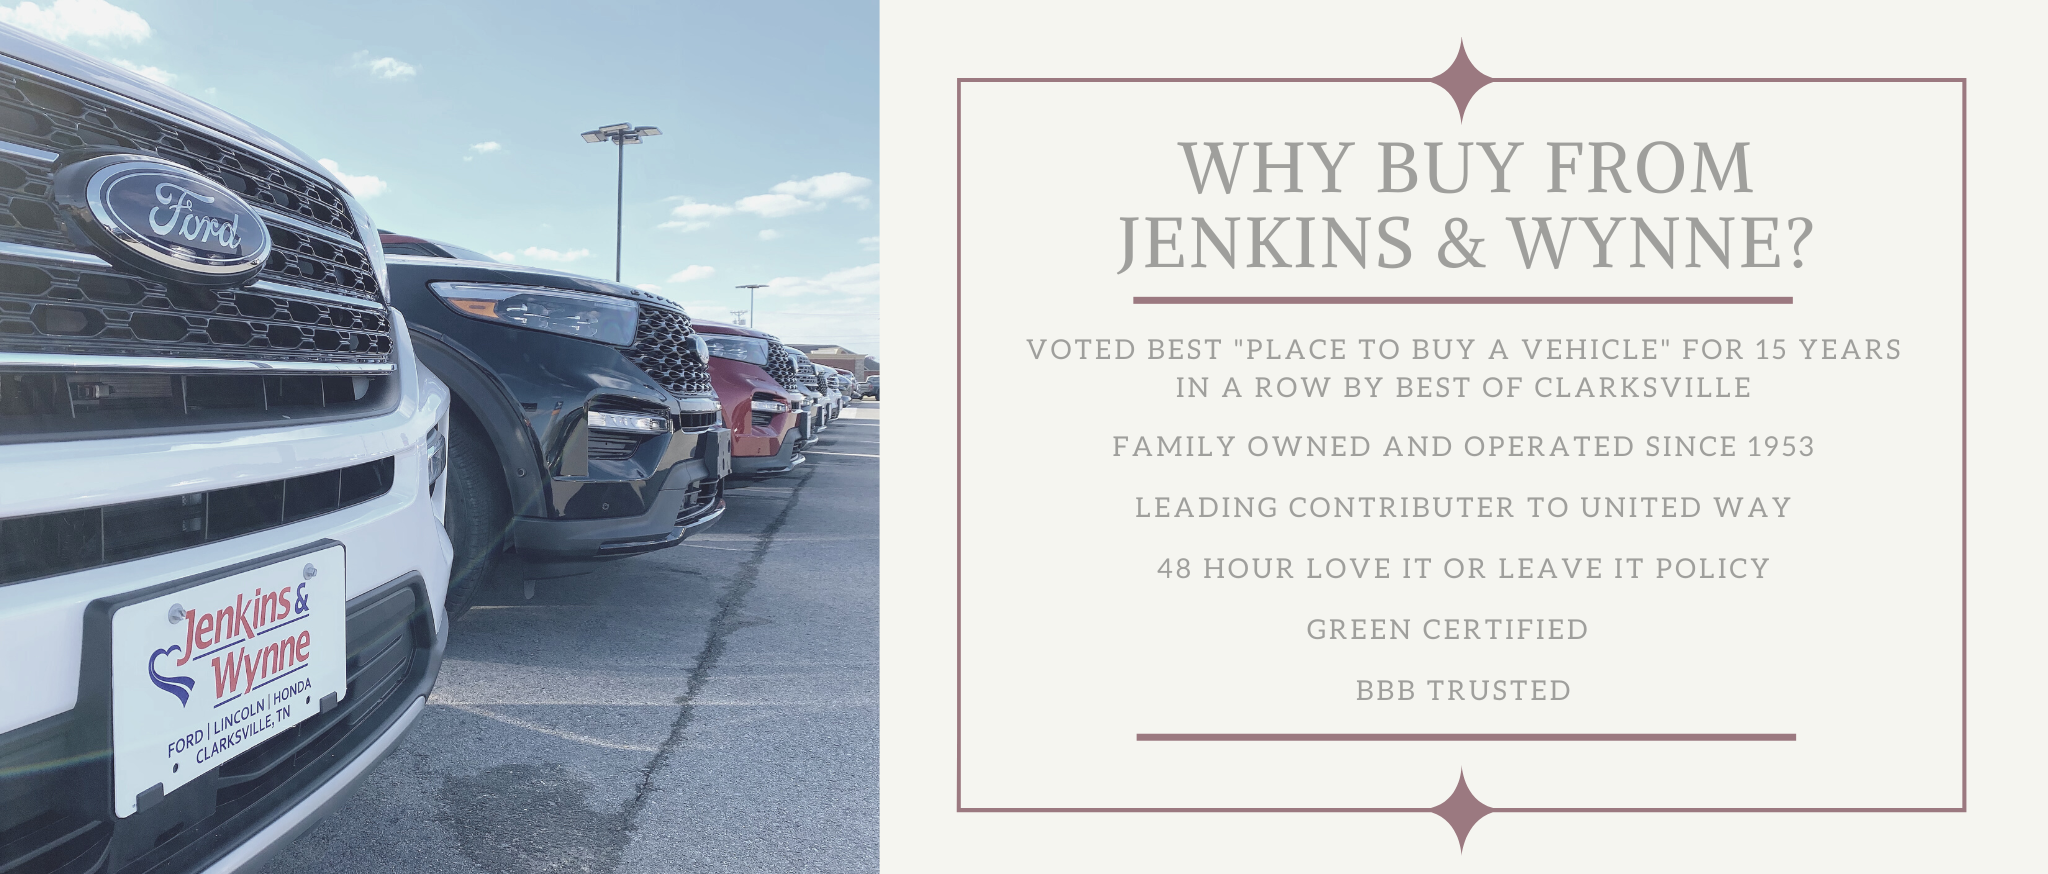 Why buy from jenkins & Wynne slide